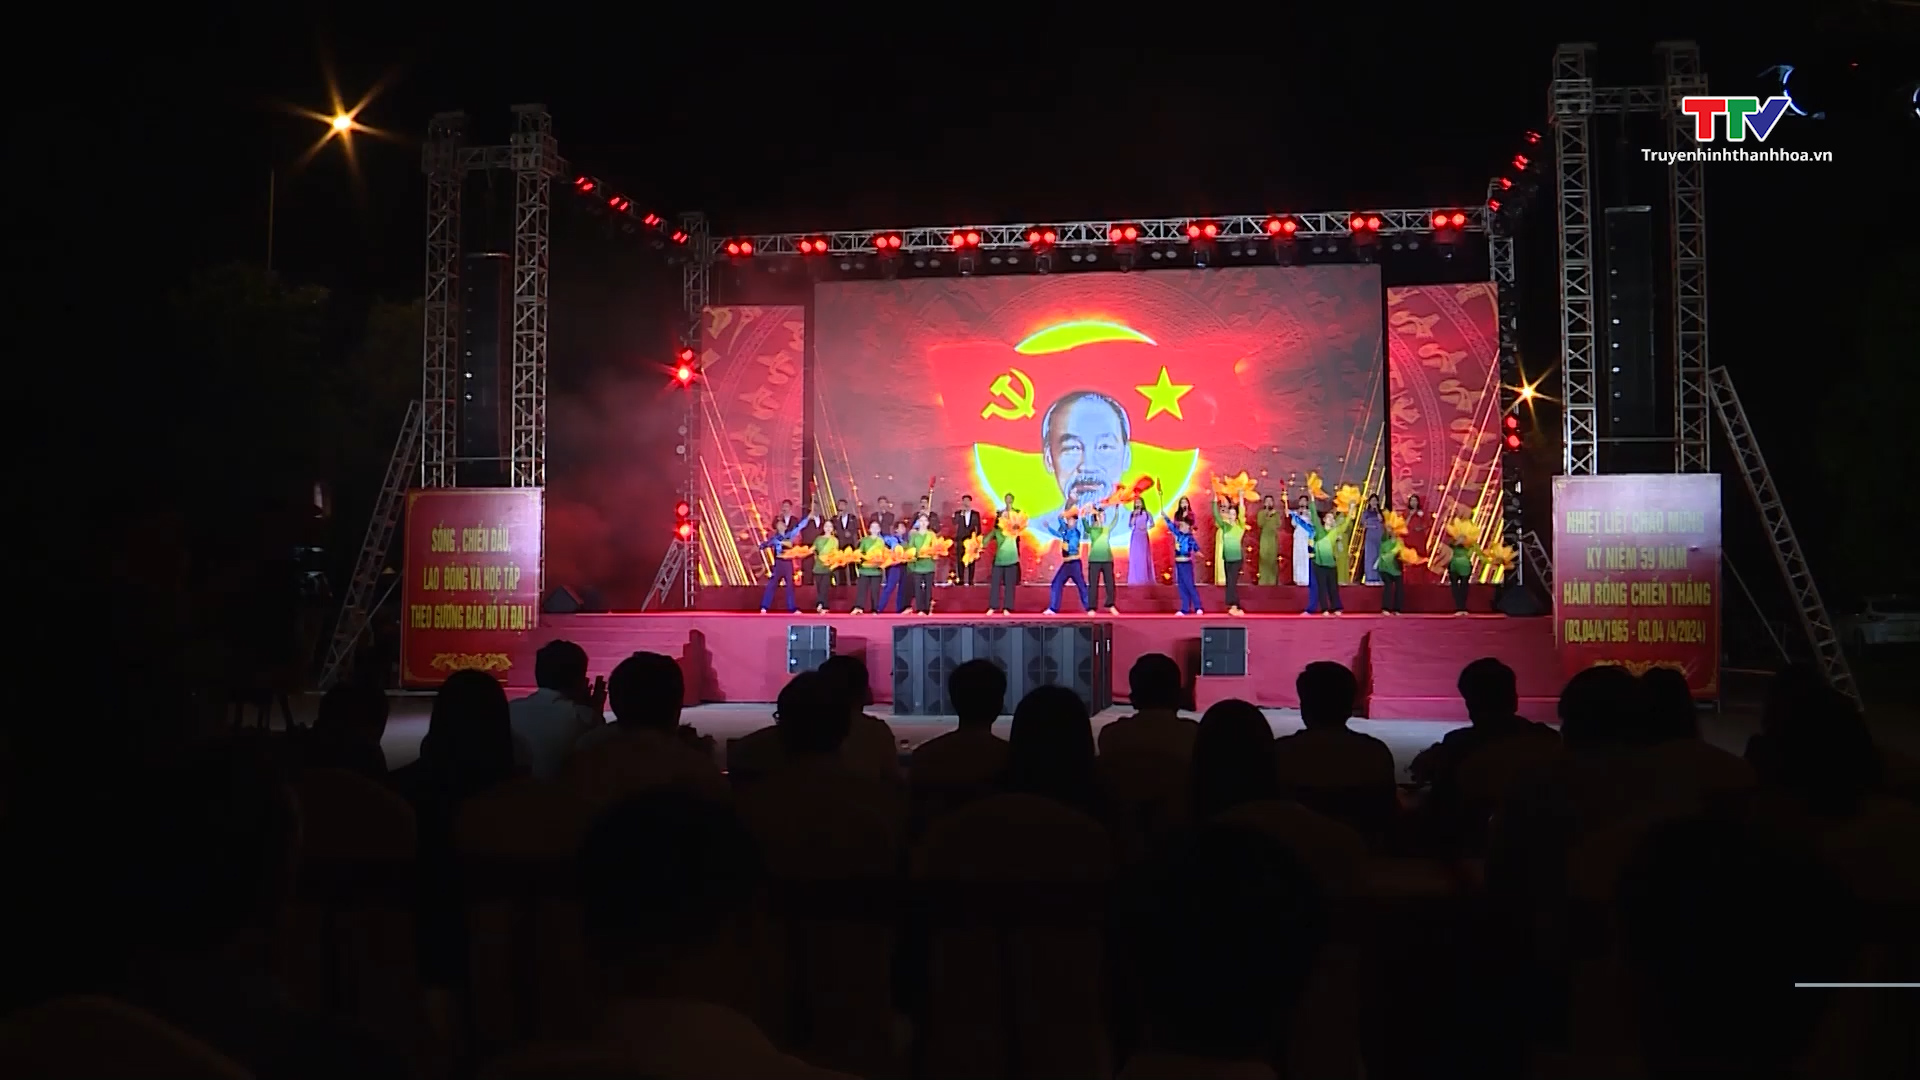 Thành phố Thanh Hóa tổ chức chương trình văn nghệ chào mừng 59 năm Hàm Rồng chiến thắng- Ảnh 3.